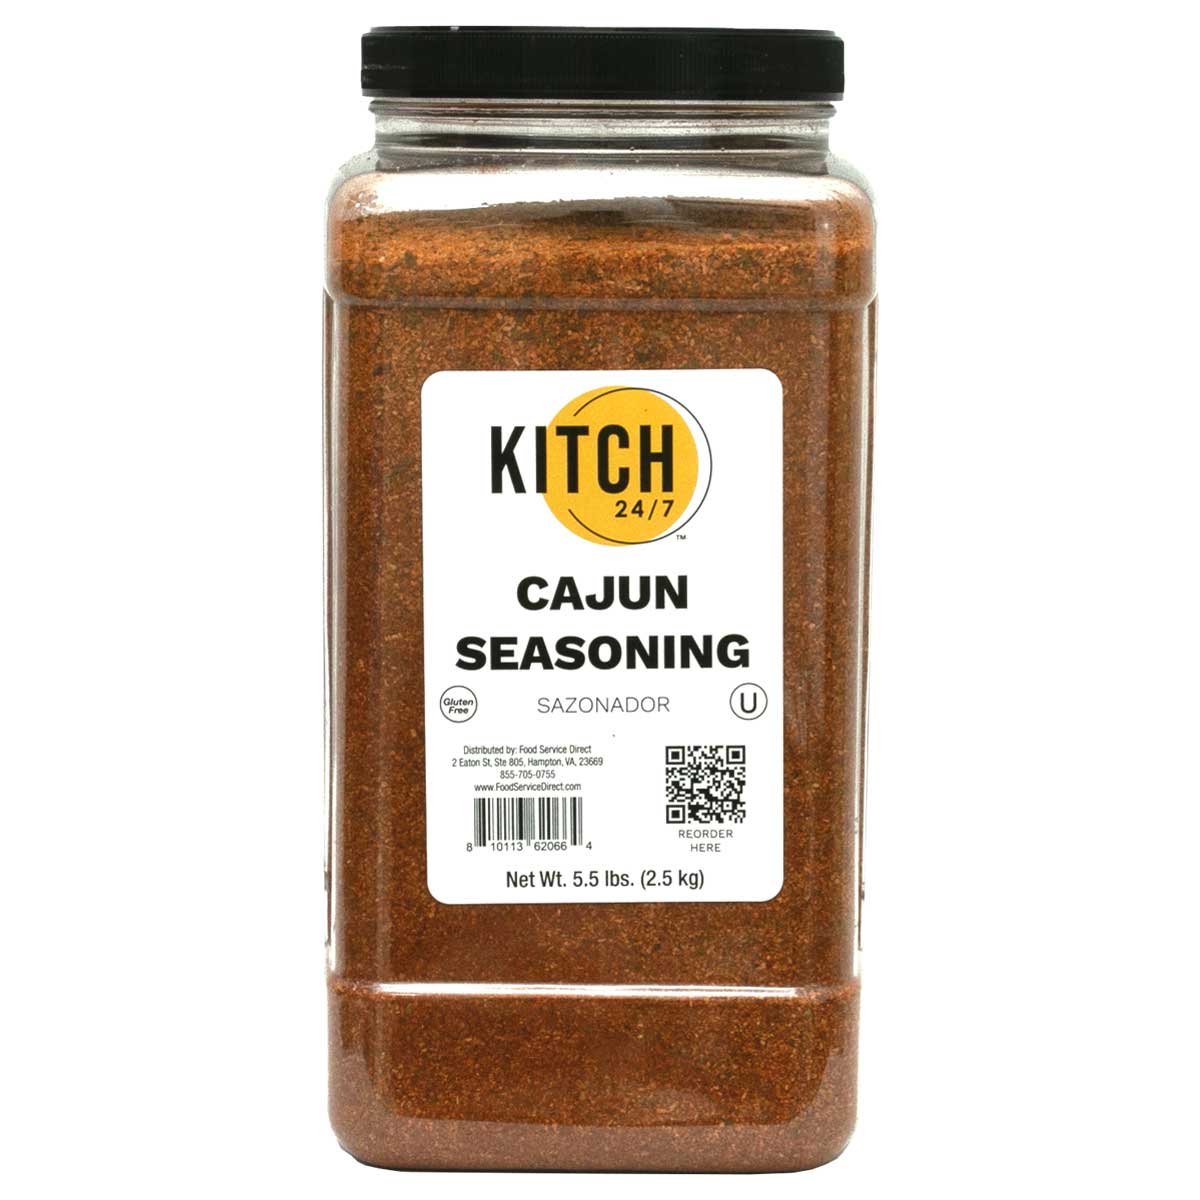 KITCH 24/7 Cajun Seasoning, 5.5 Pound